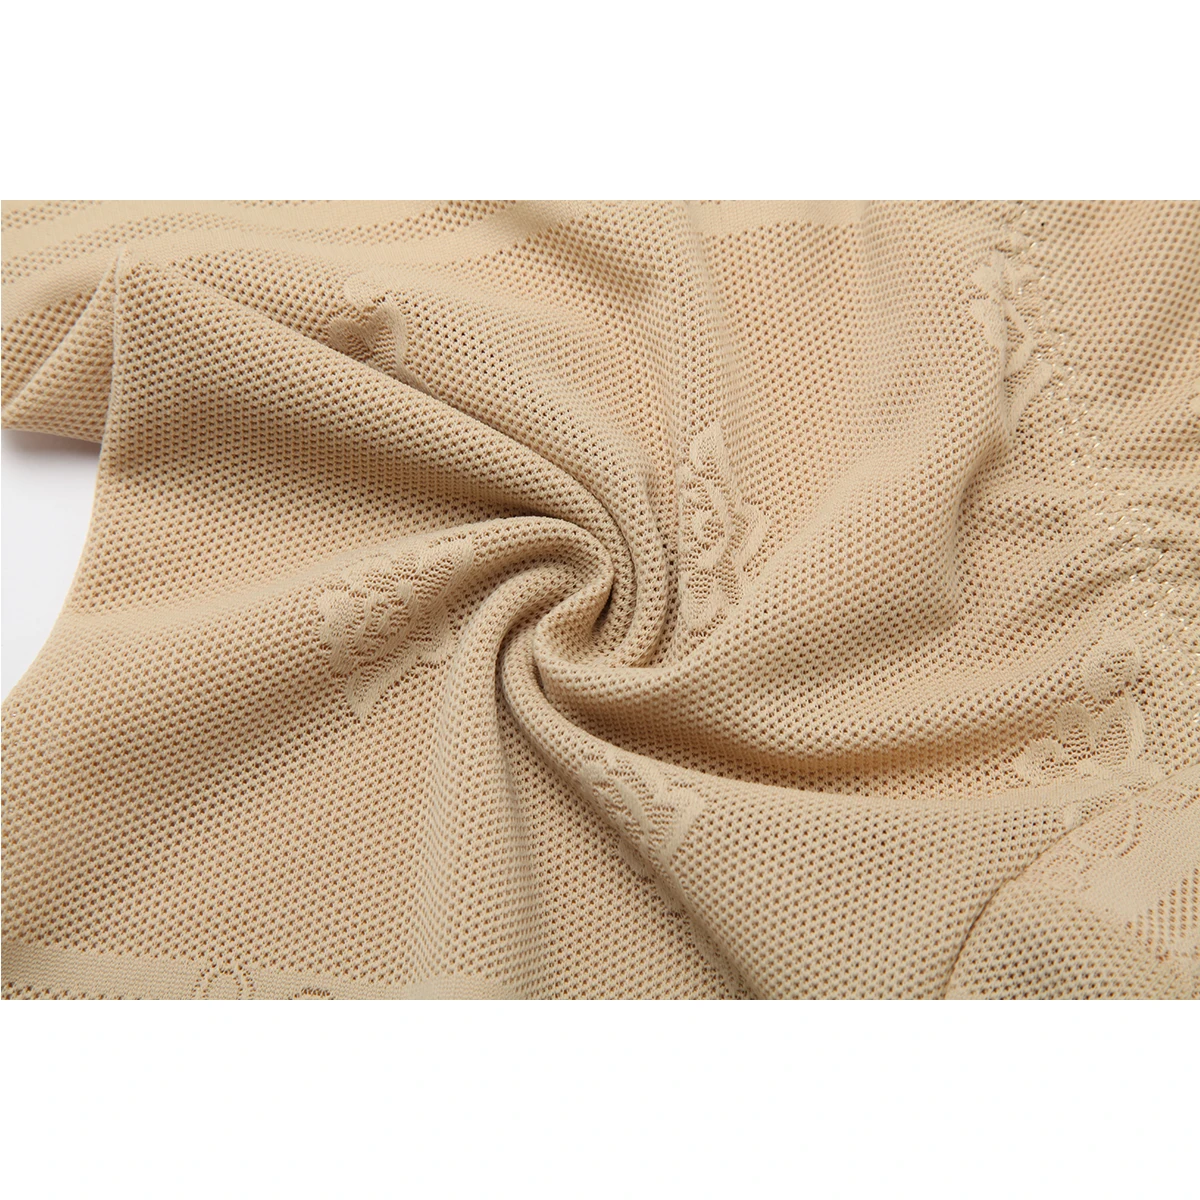 Joyshaper утягивающие штаны шорты под платья для женщин Корректирующее белье с подкладкой бесшовное нижнее белье облегающее стройнее Корректирующее белье